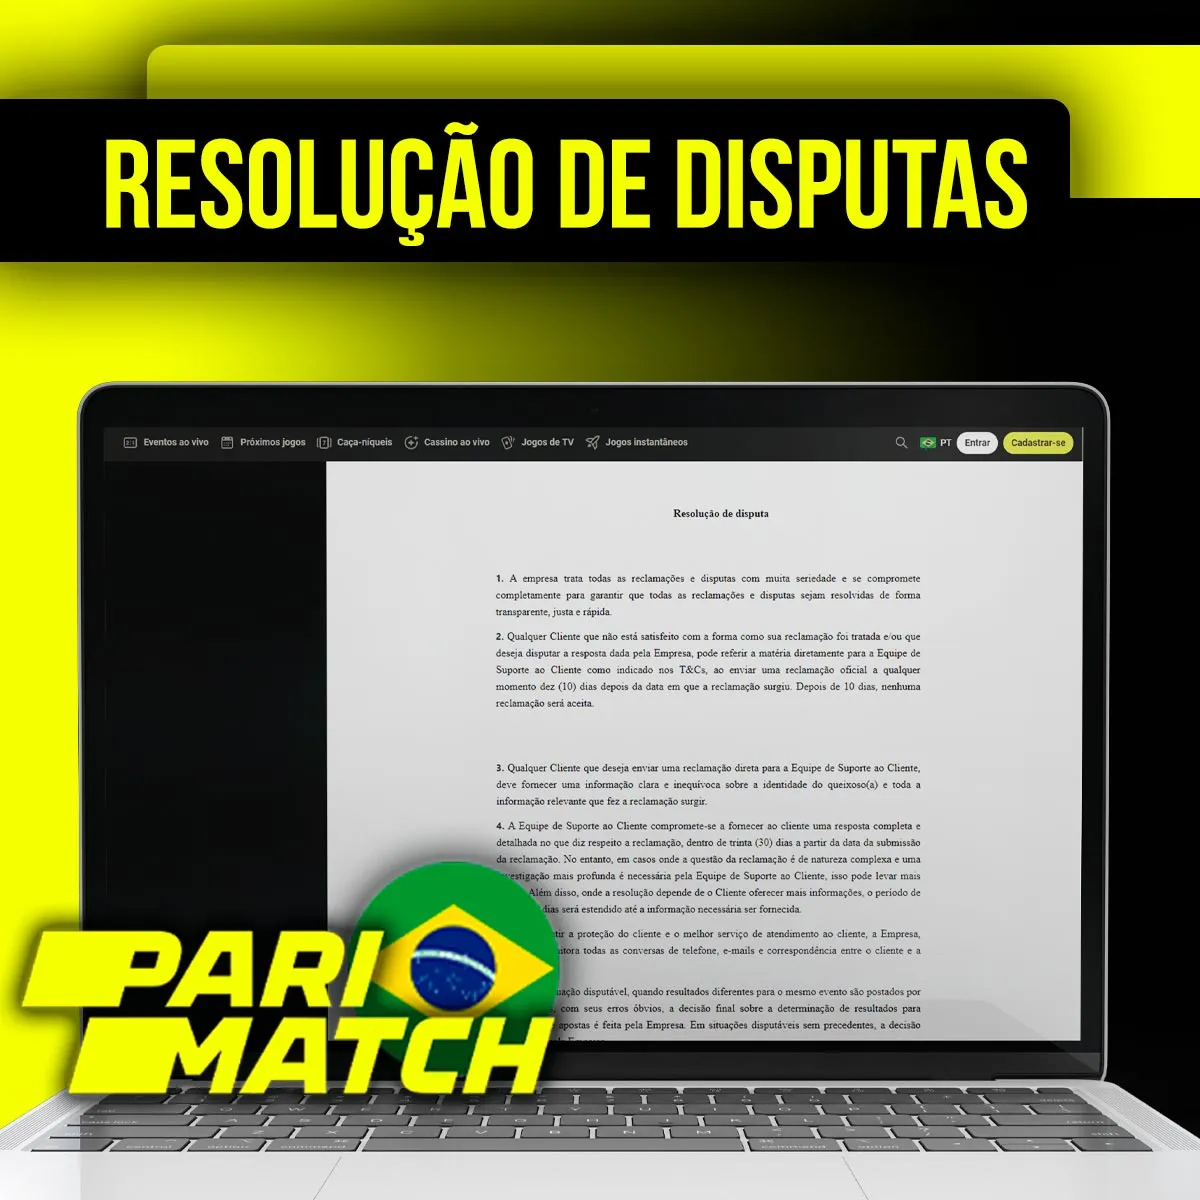 Resolução de disputas de apostas Parimatch no Brasil